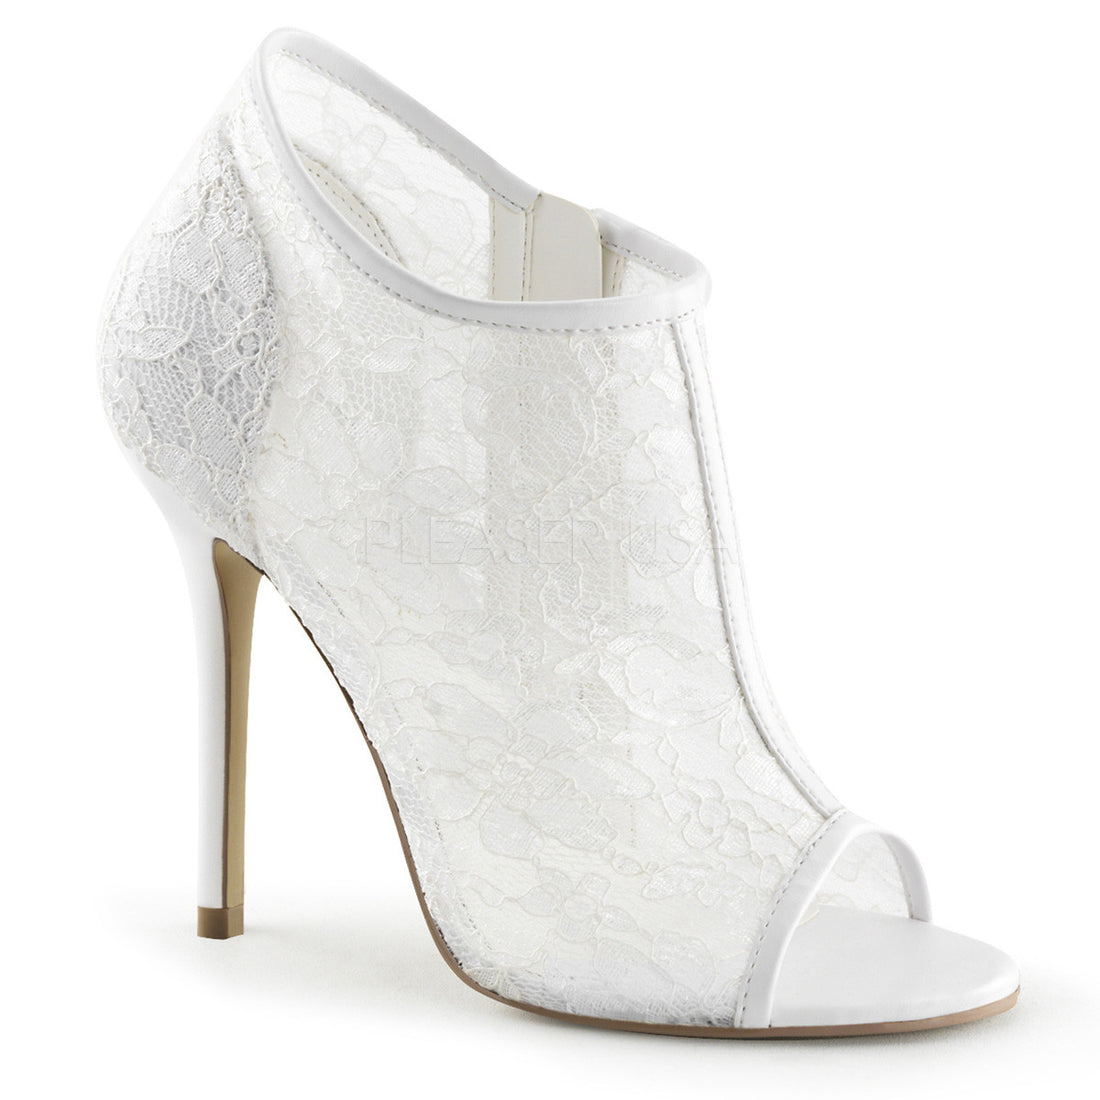 Ivory Lace Wedding Shoes - FABULICIOUS AMUSE-56 – Shoecup.com